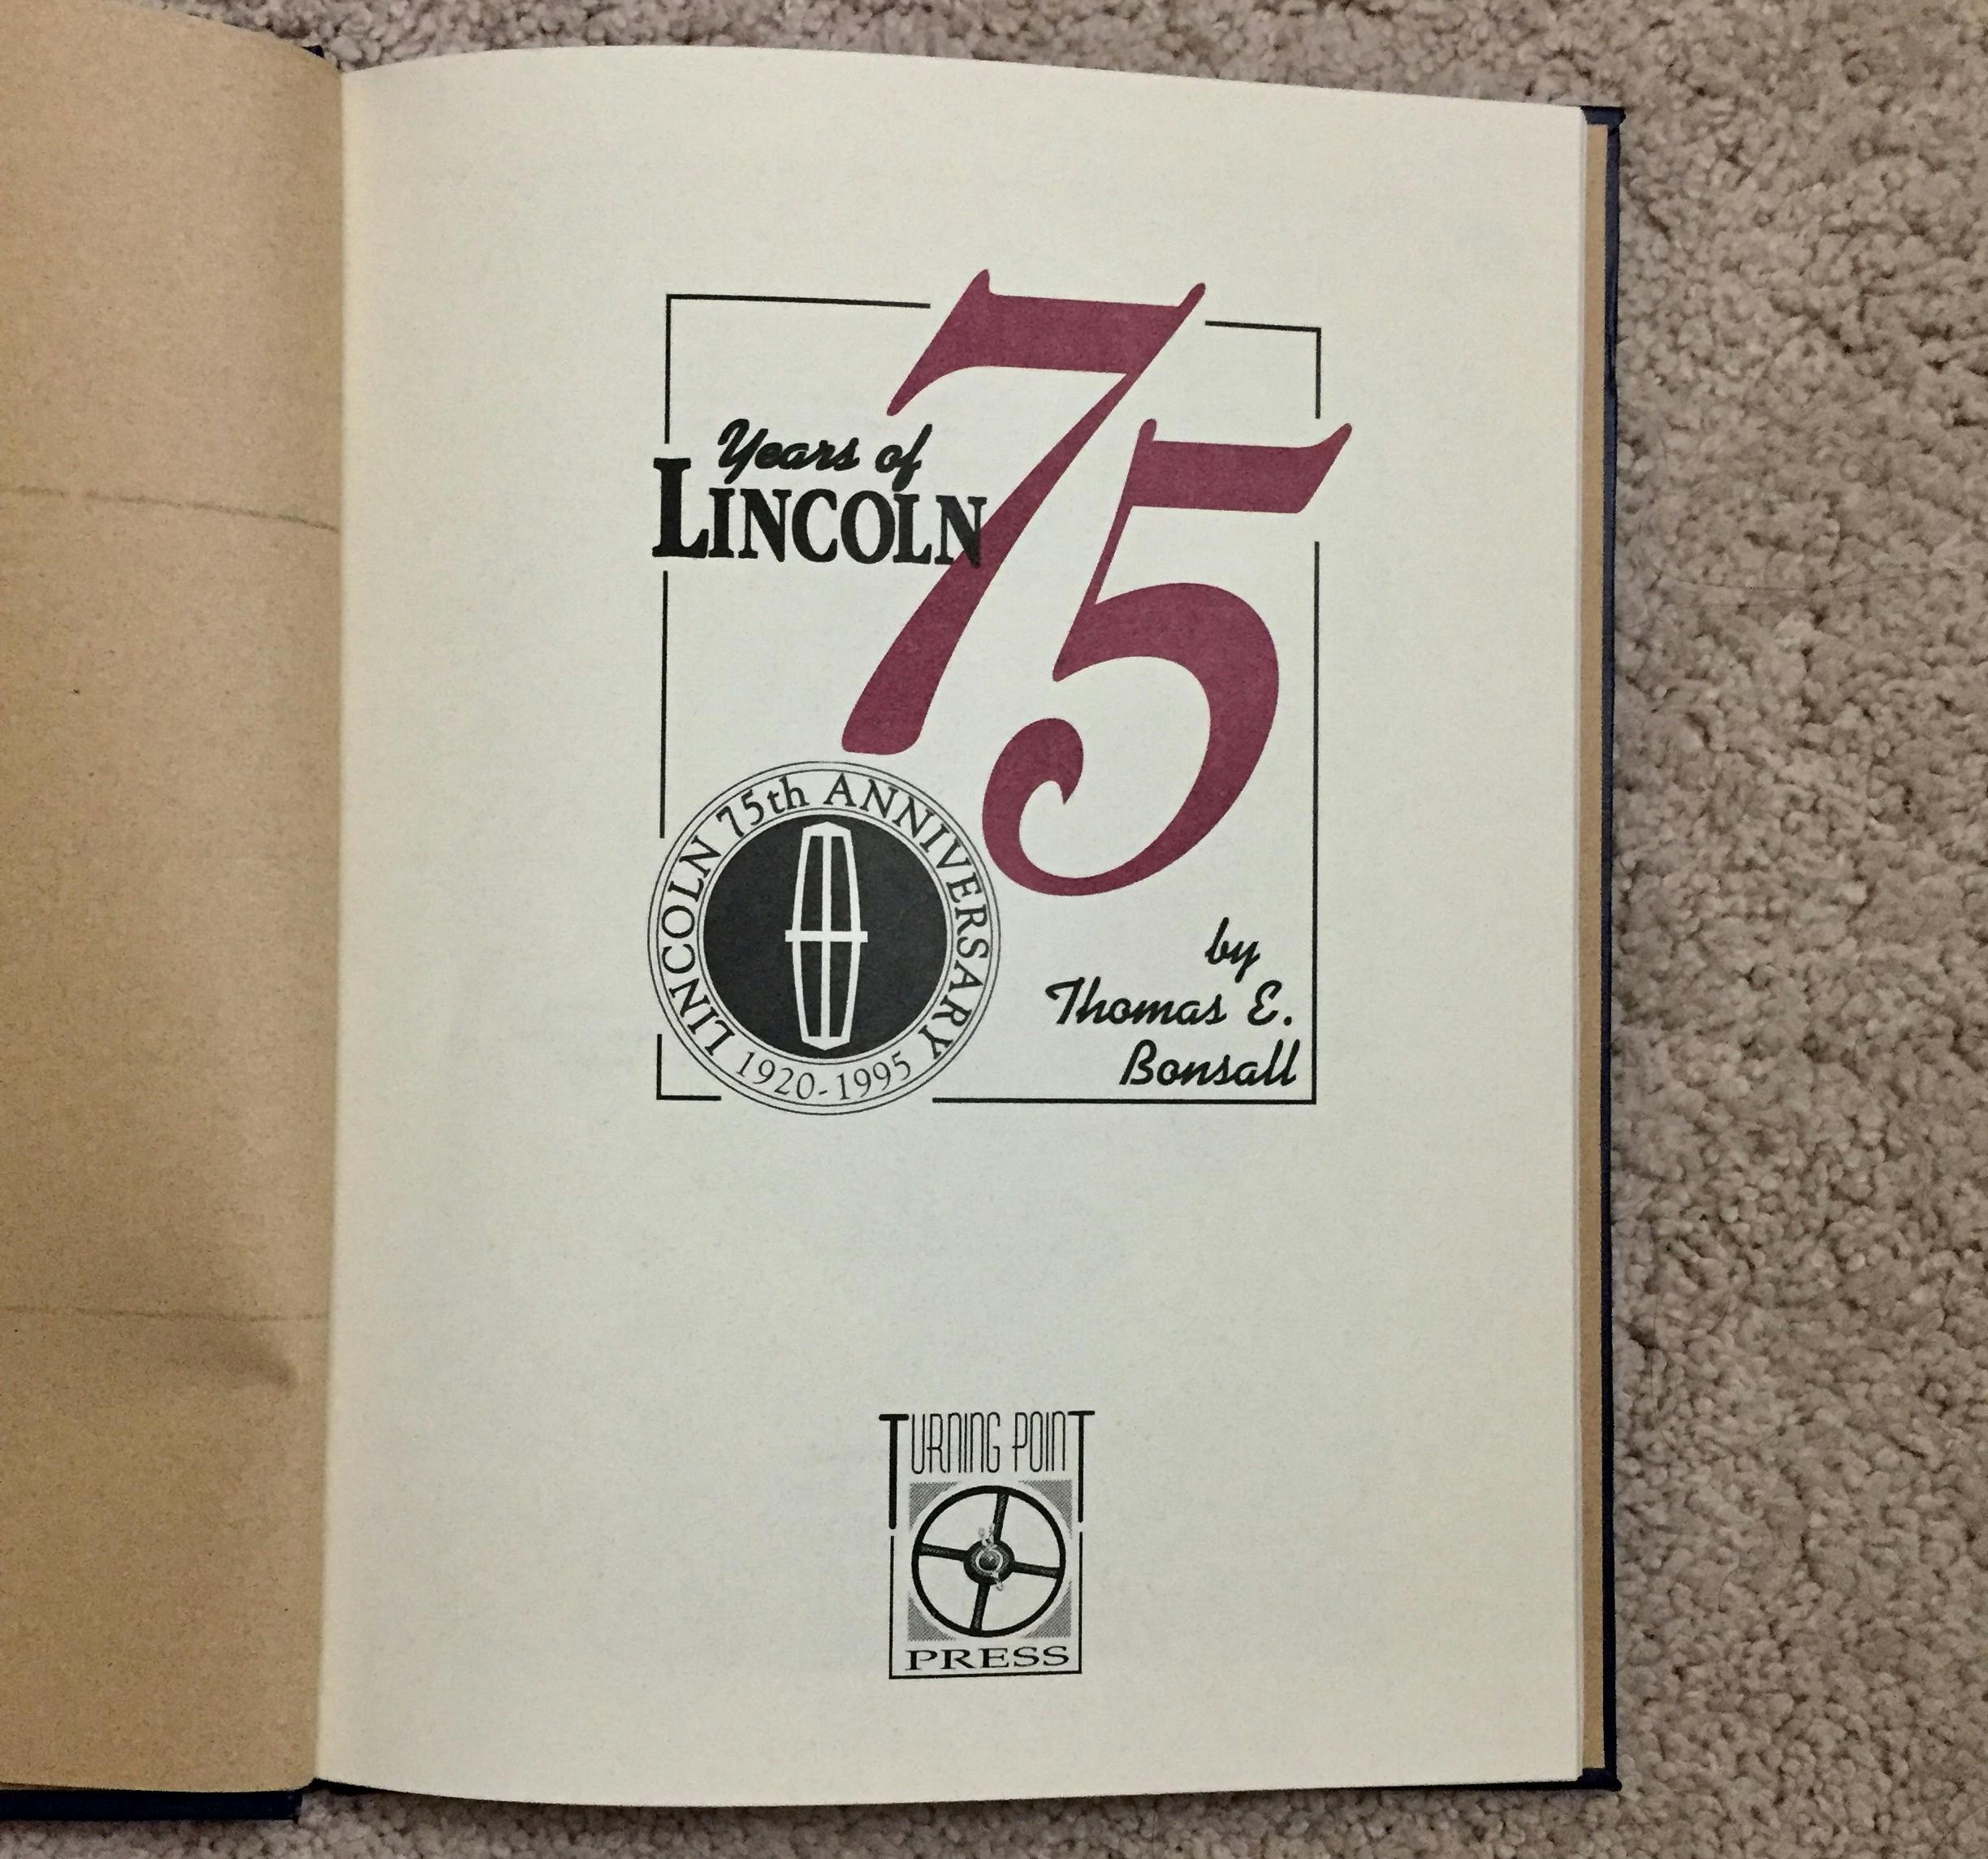 75th Anniversary Lincoln book